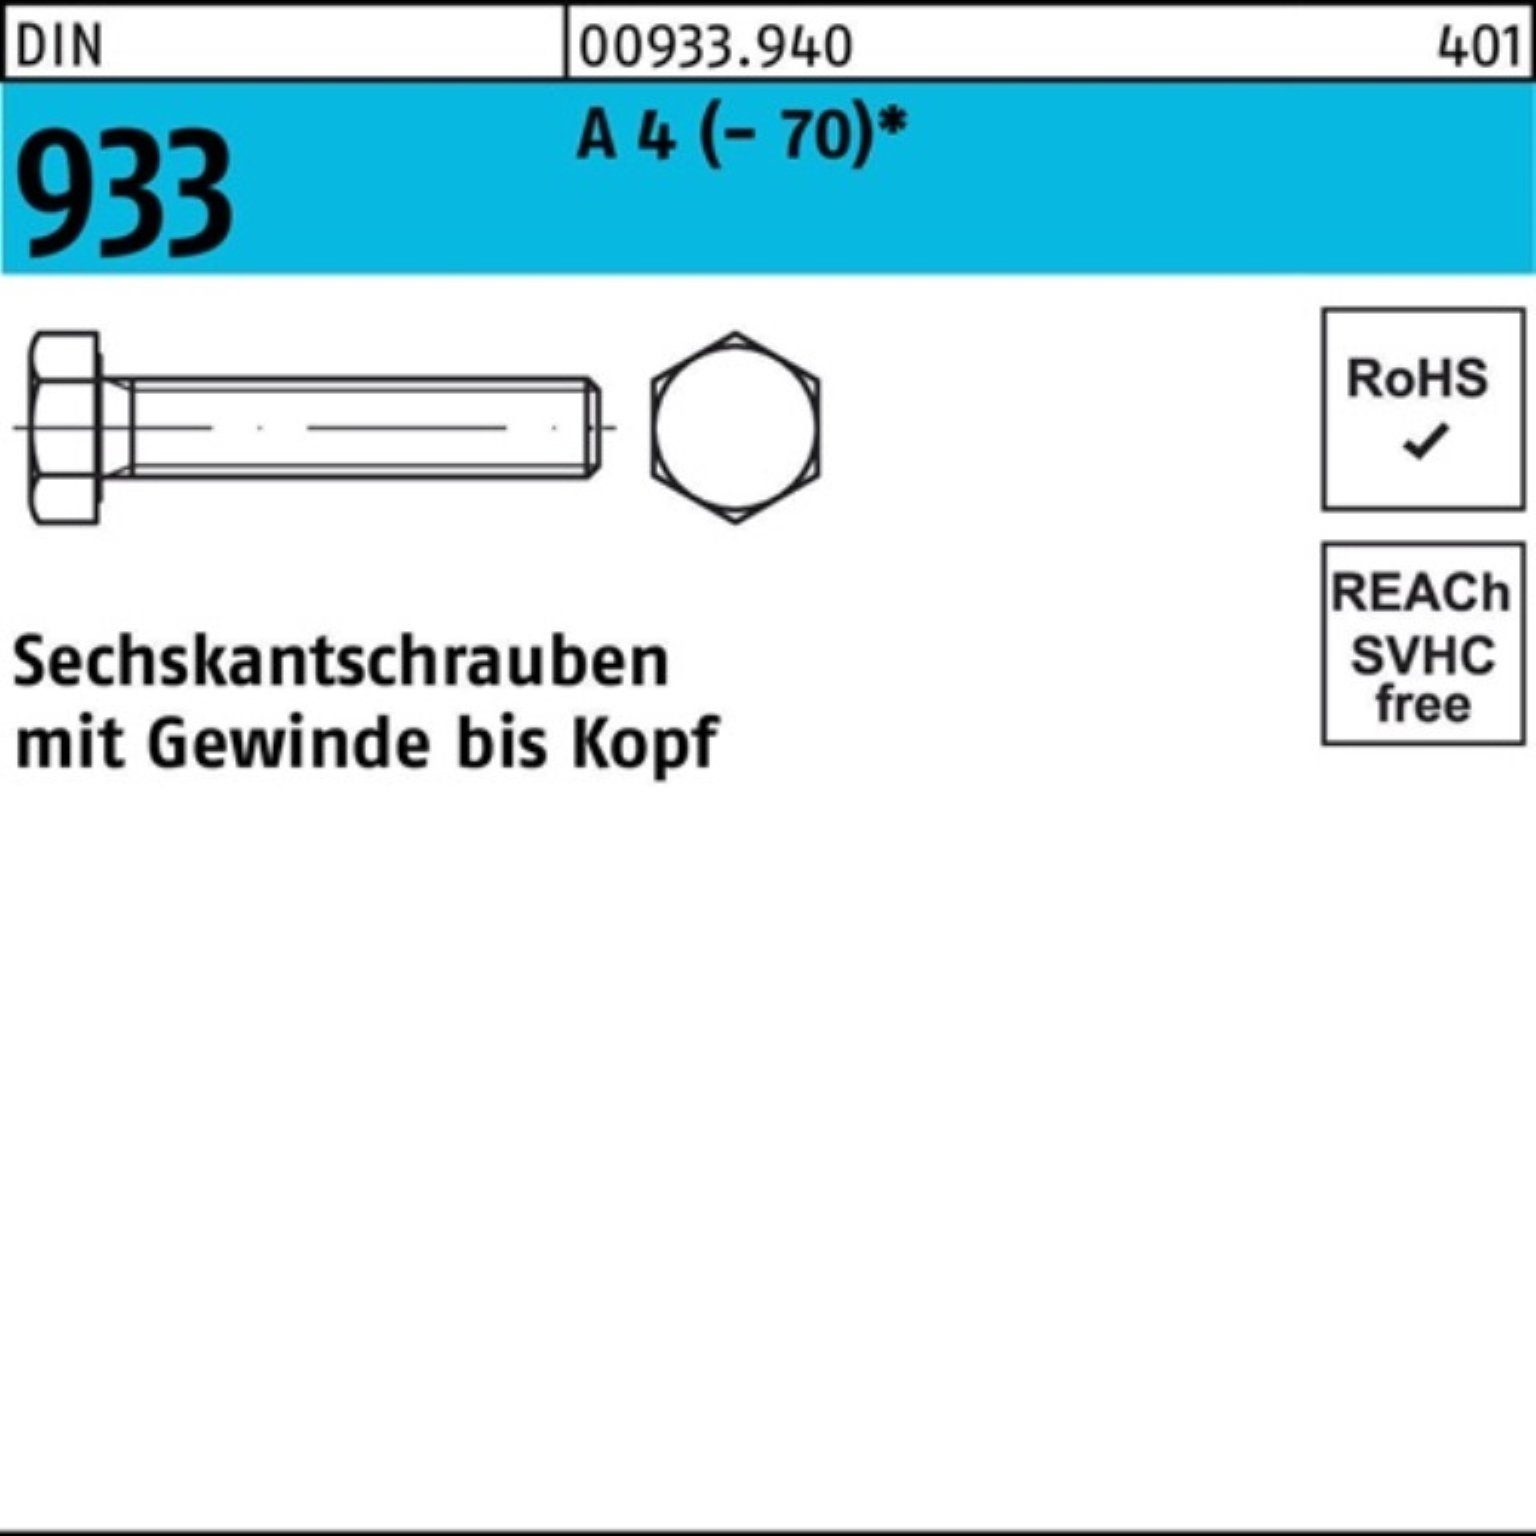 M14x 40 Sechskantschraube Pack 933 Sechskantschraube 4 (70) Reyher Stück A D 100er VG 50 DIN